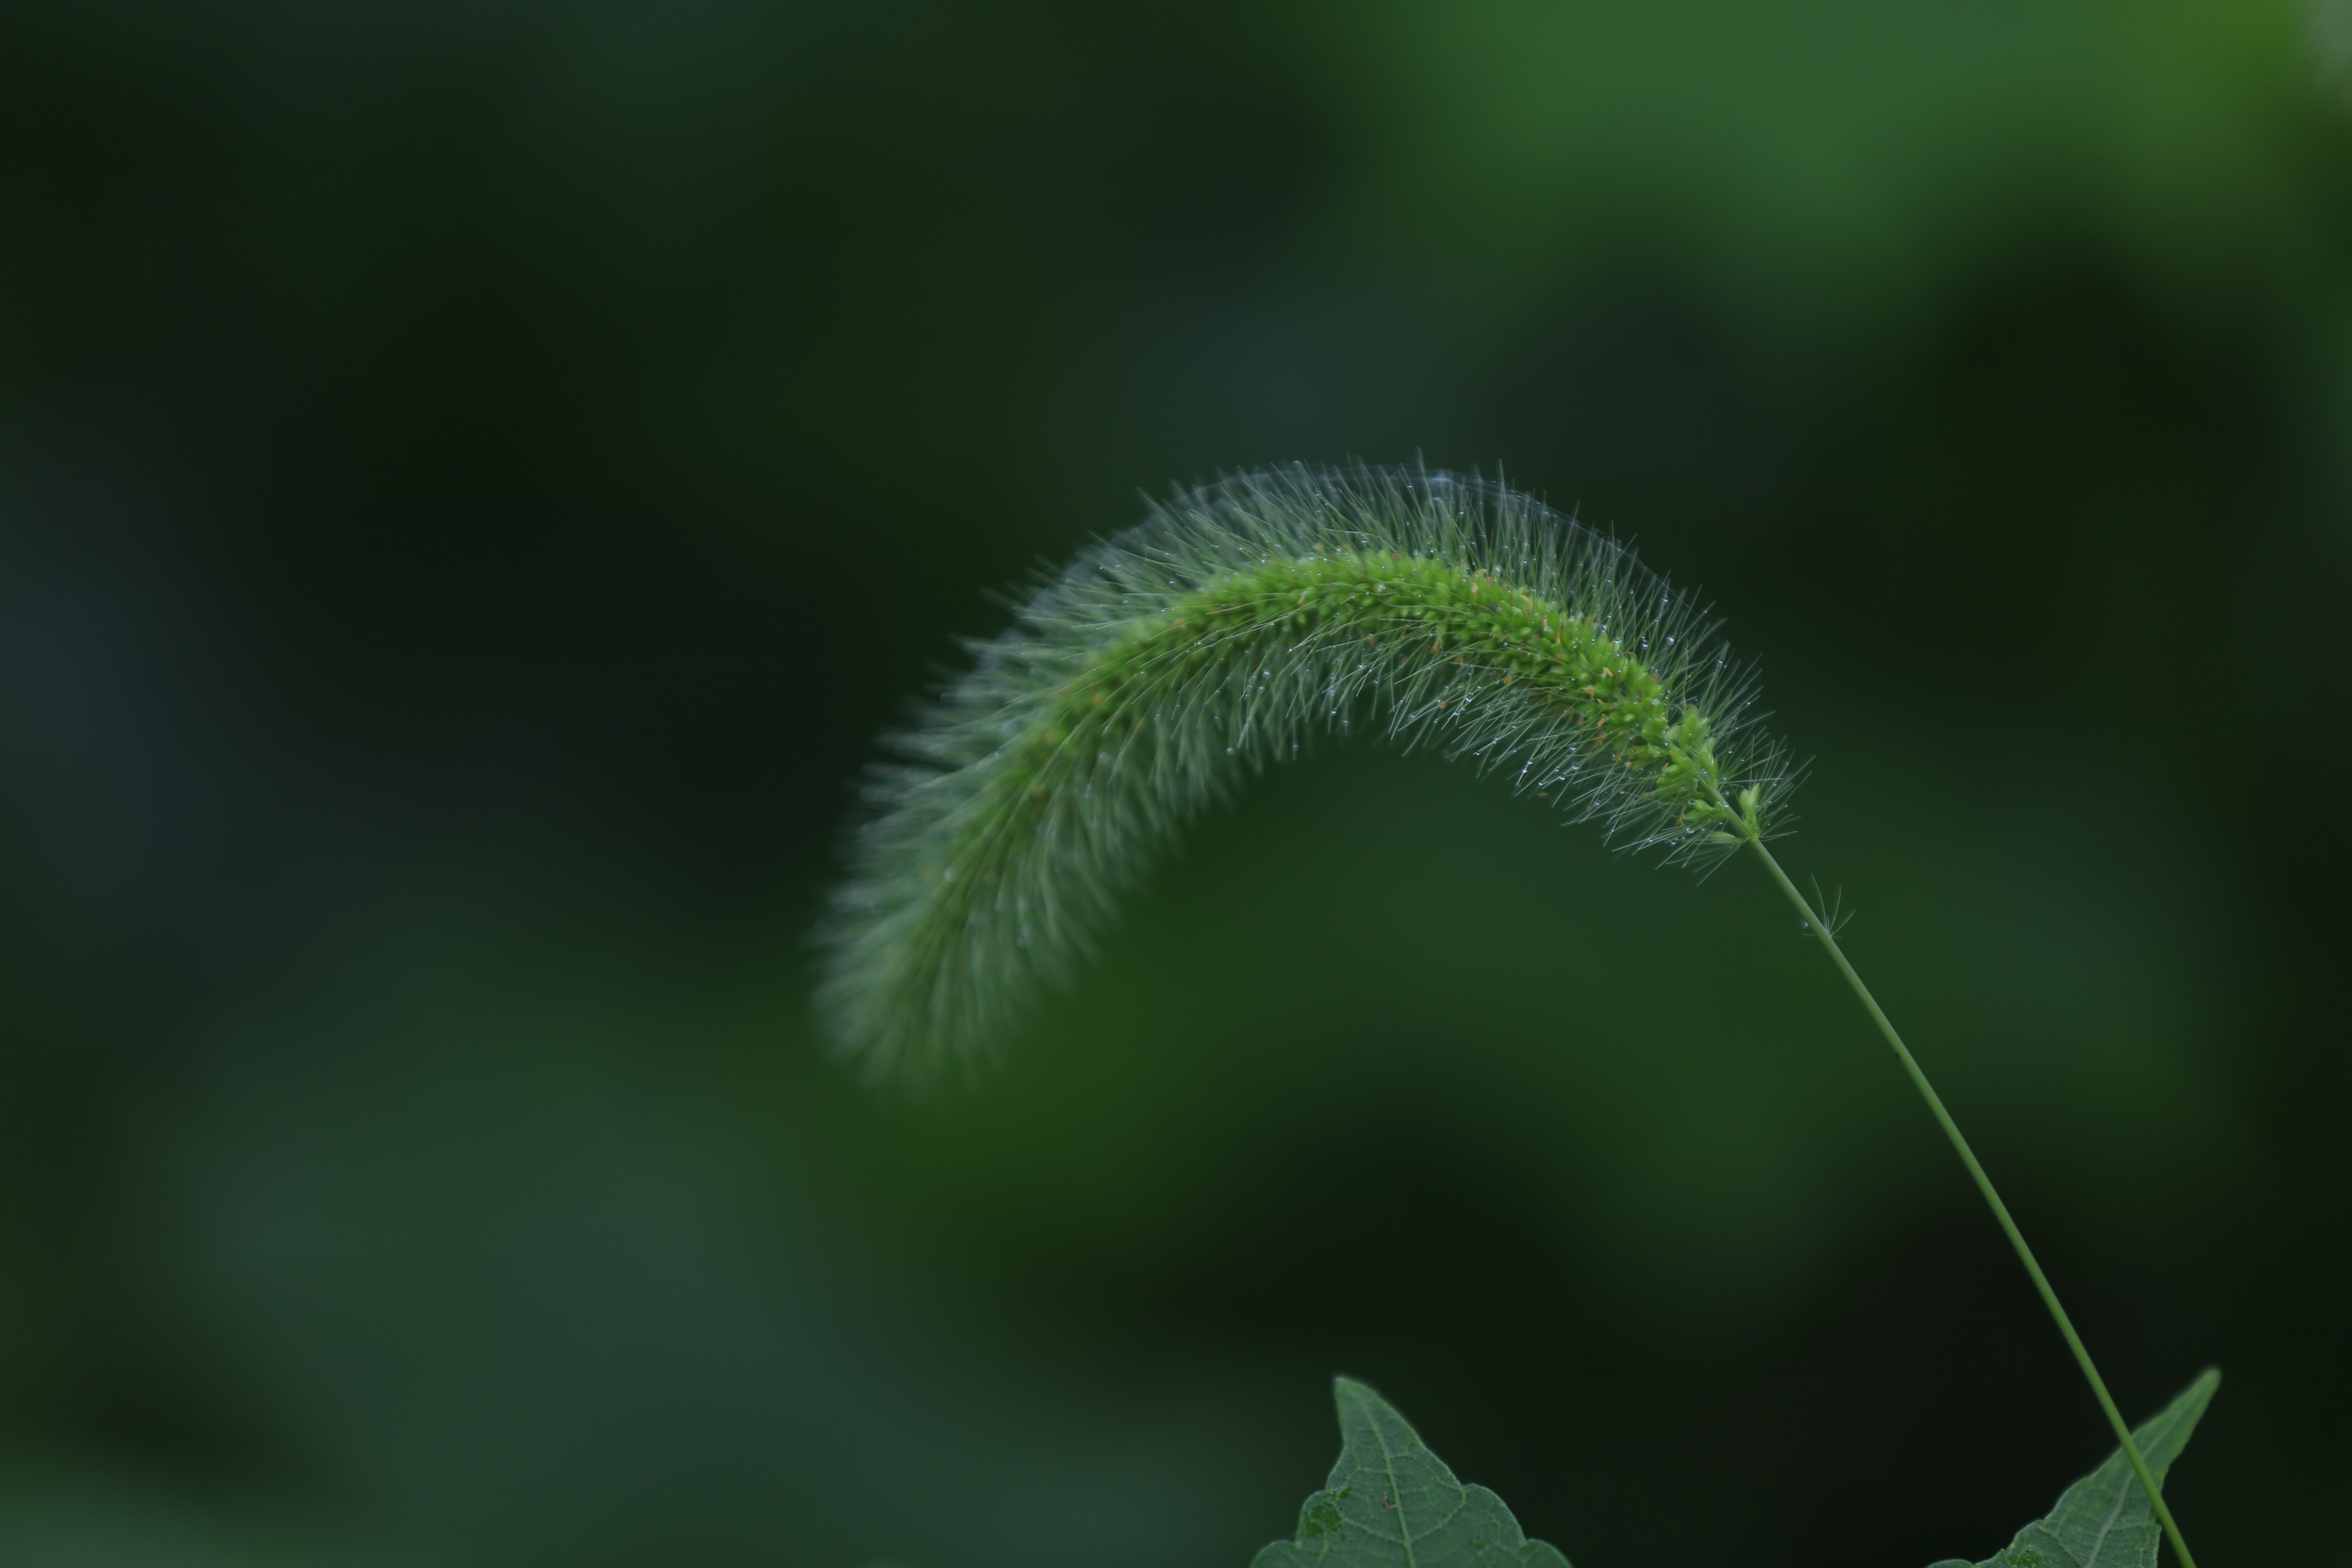 拍摄:小菌 狗尾巴草是我们生活当中最为常见的,一般来说它的花语是